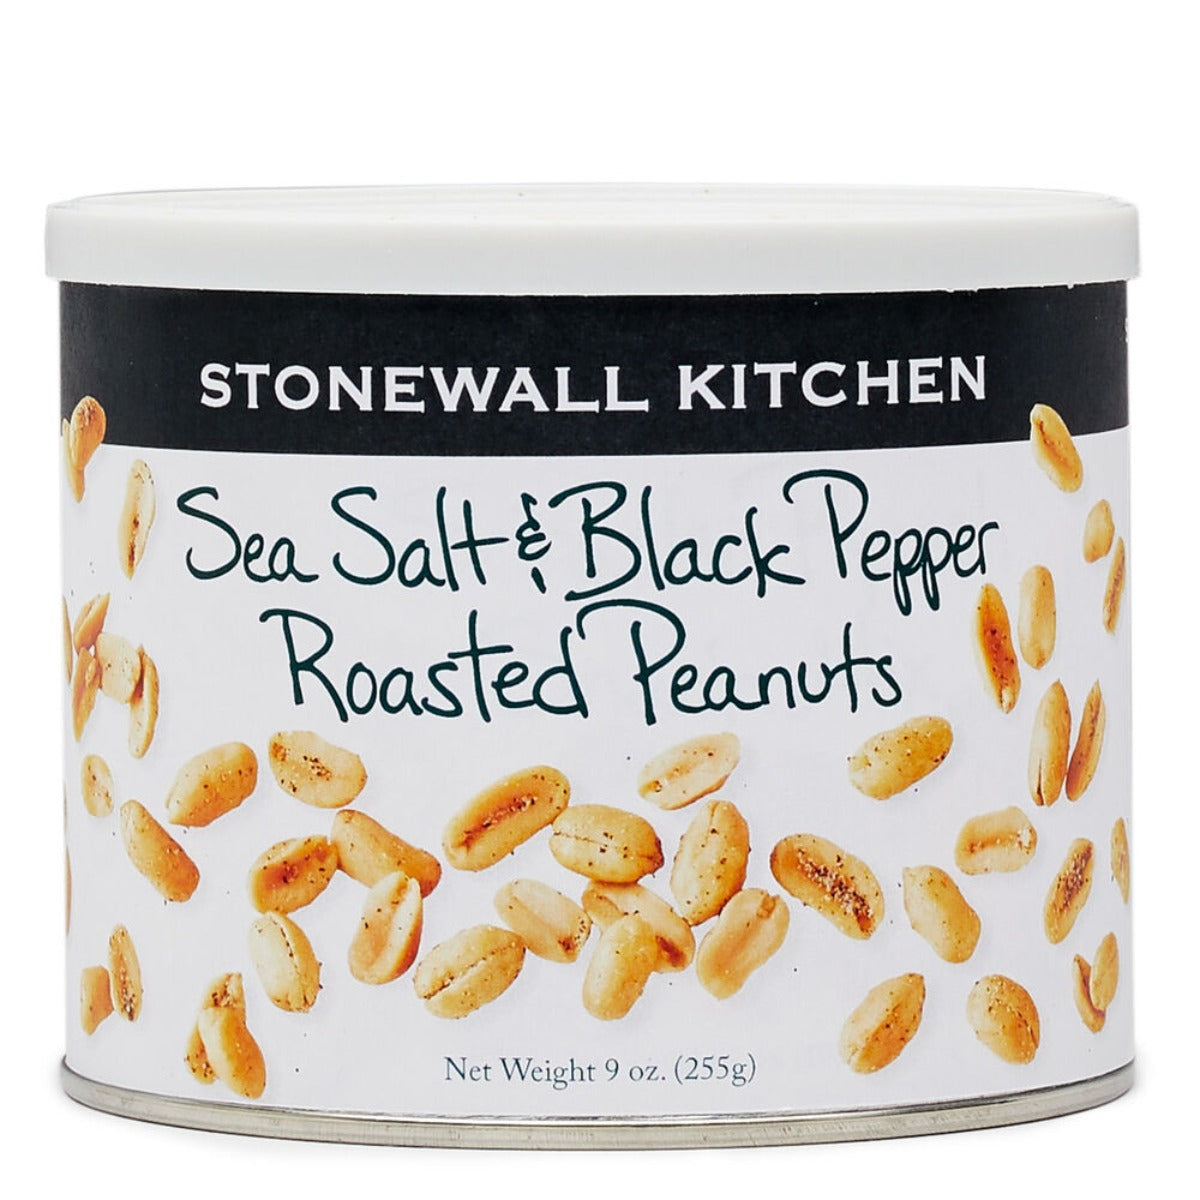 Sea Salt & Black Pepper Roasted Peanuts